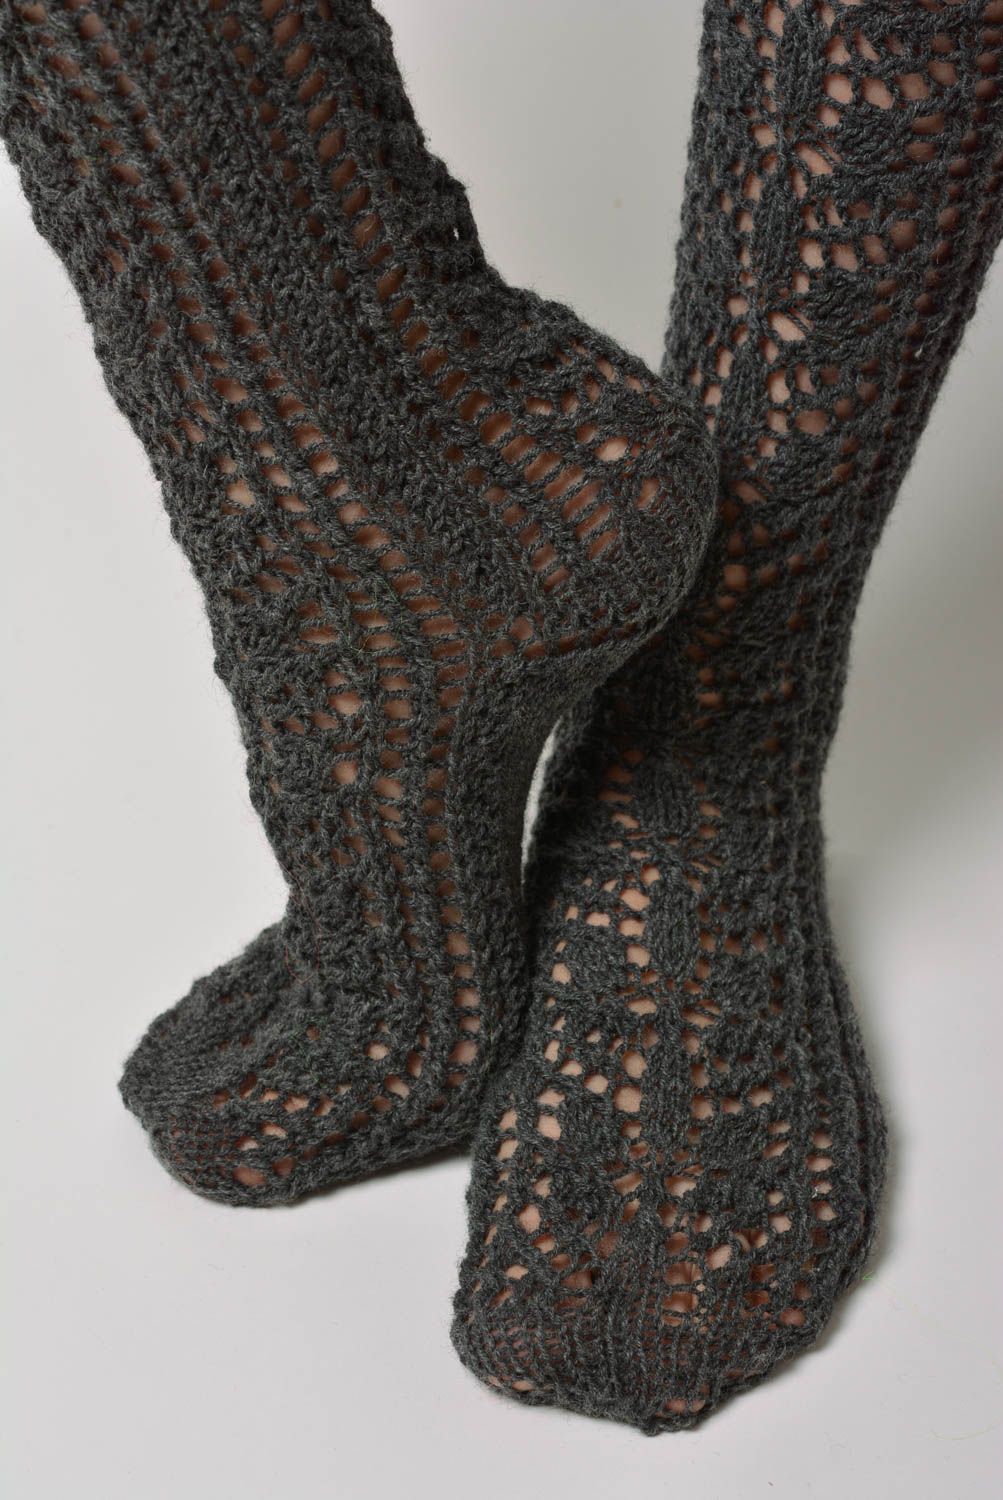 Calcetines femeninos largos de rodilla artesanales tejidos a dos agujas de lana foto 4